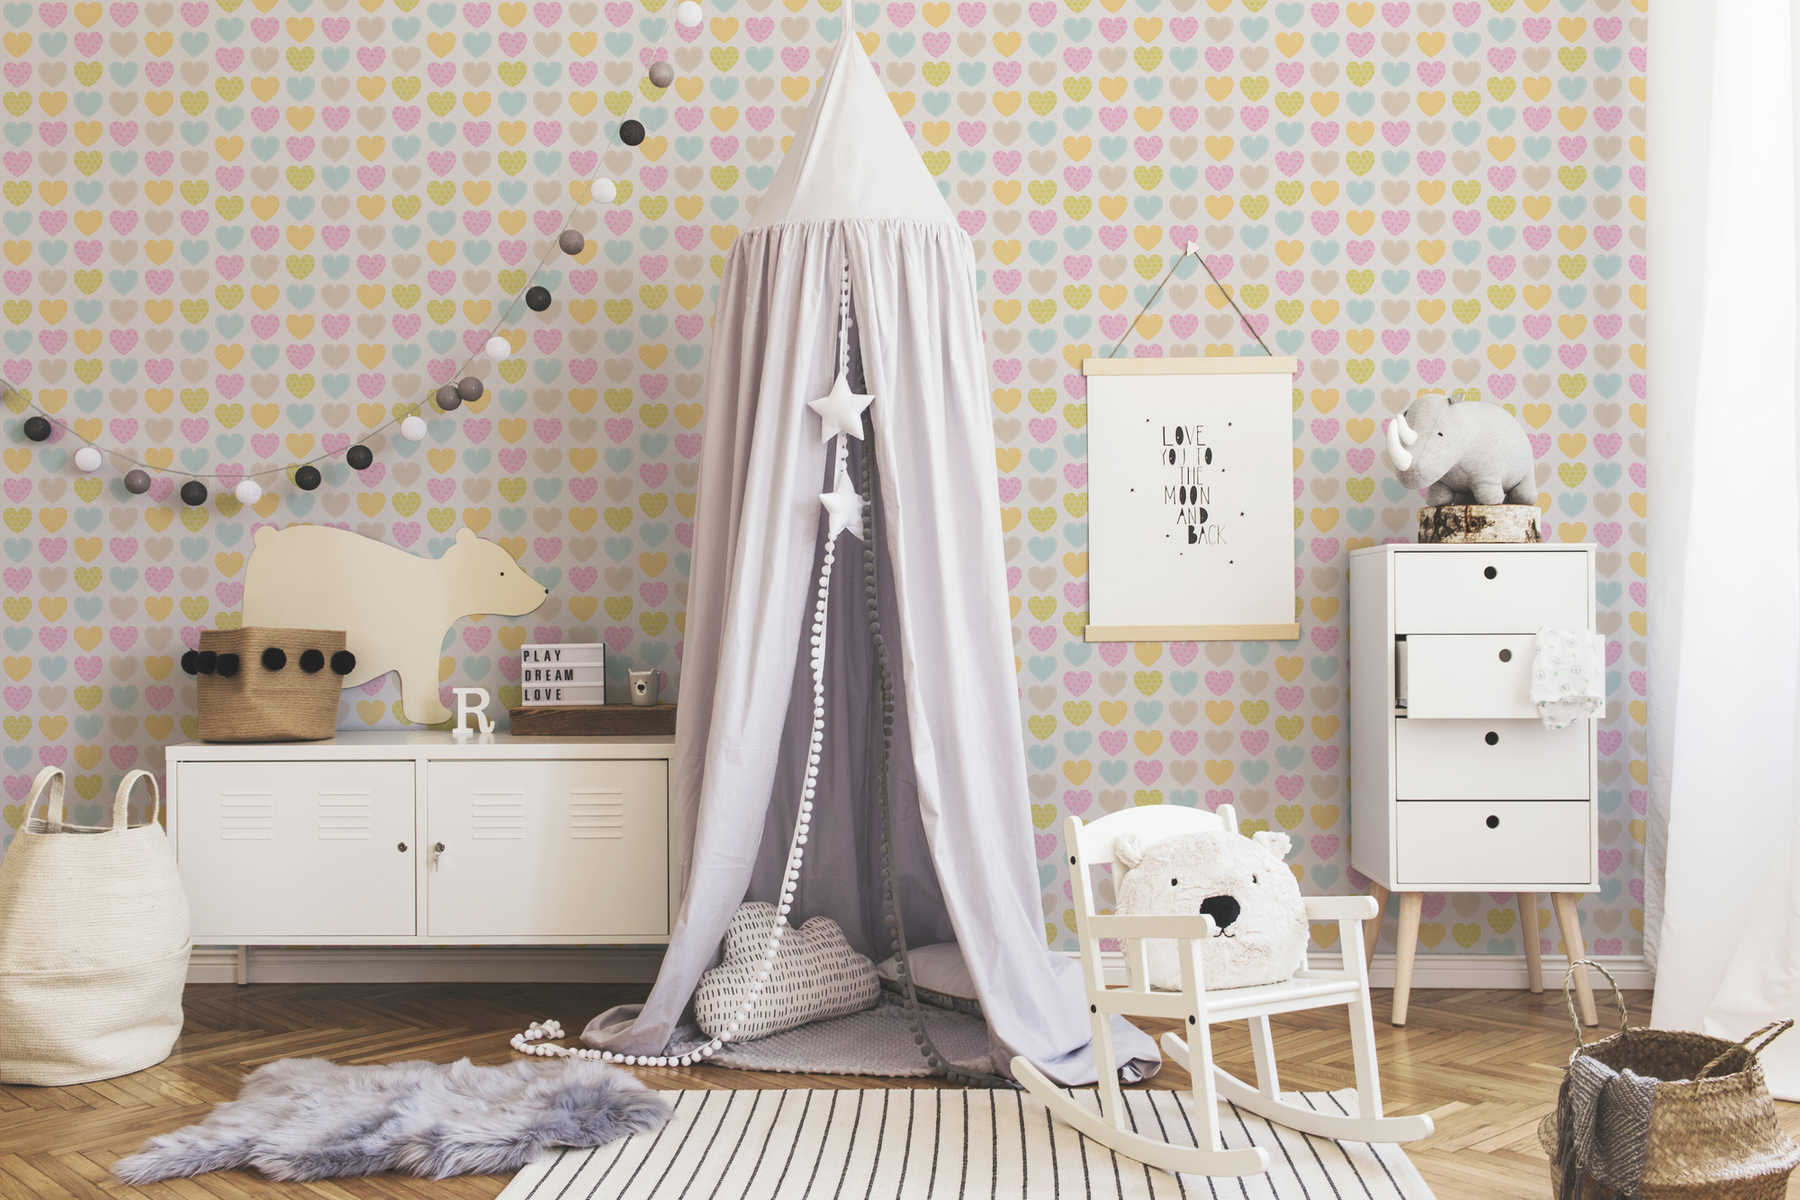             Papier peint pastel avec des coeurs pour chambre d'enfant - multicolore, blanc
        